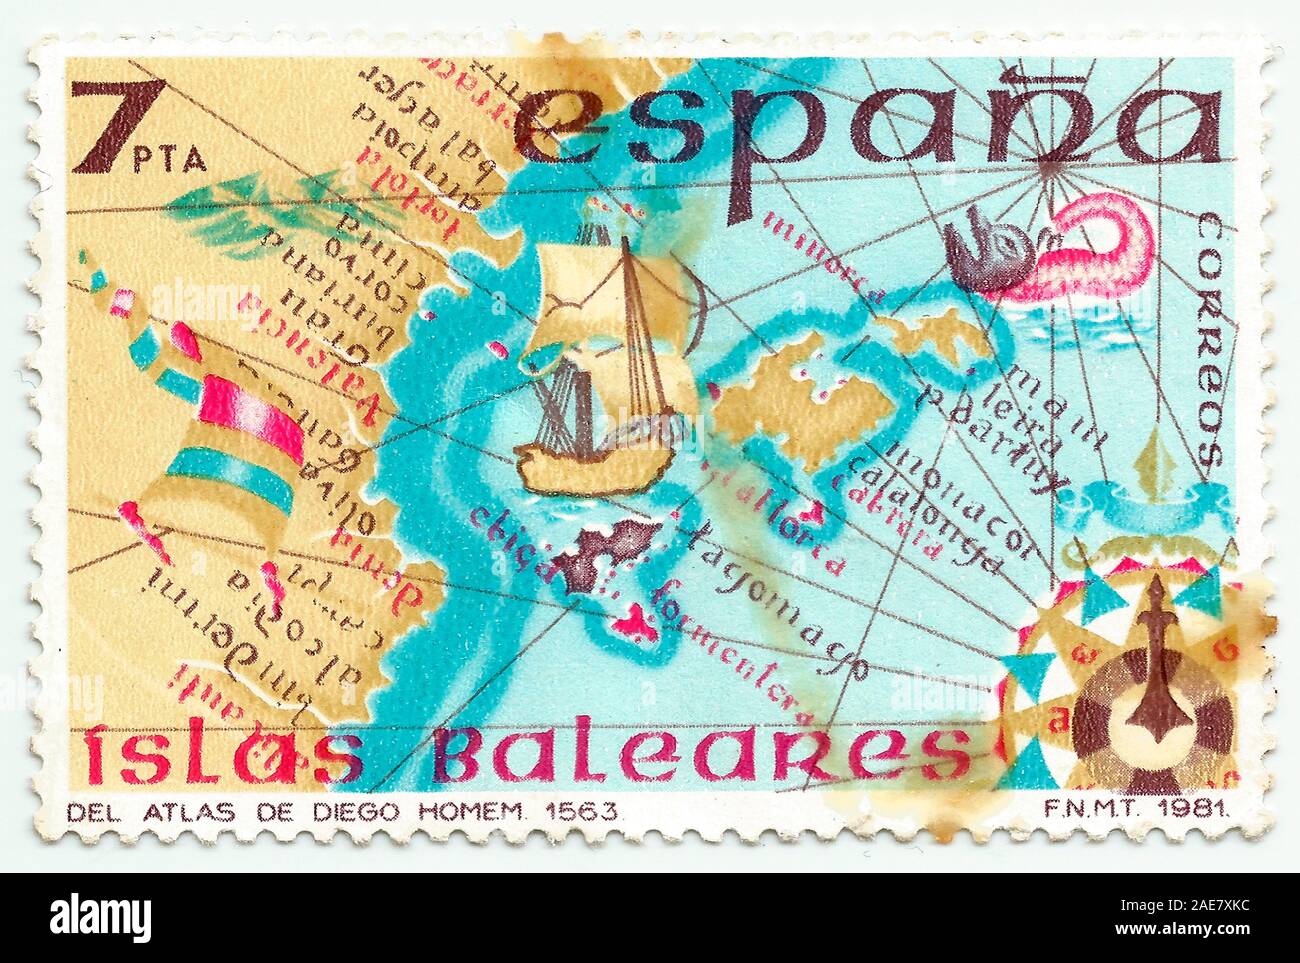 Mérida, Extremadura, Spanien - DIC, 01, 2018 - Stempel in Spanien gedruckt zeigt die Karte der Balearen, Spanien Inselgruppe im Mittelmeer. CIR Stockfoto